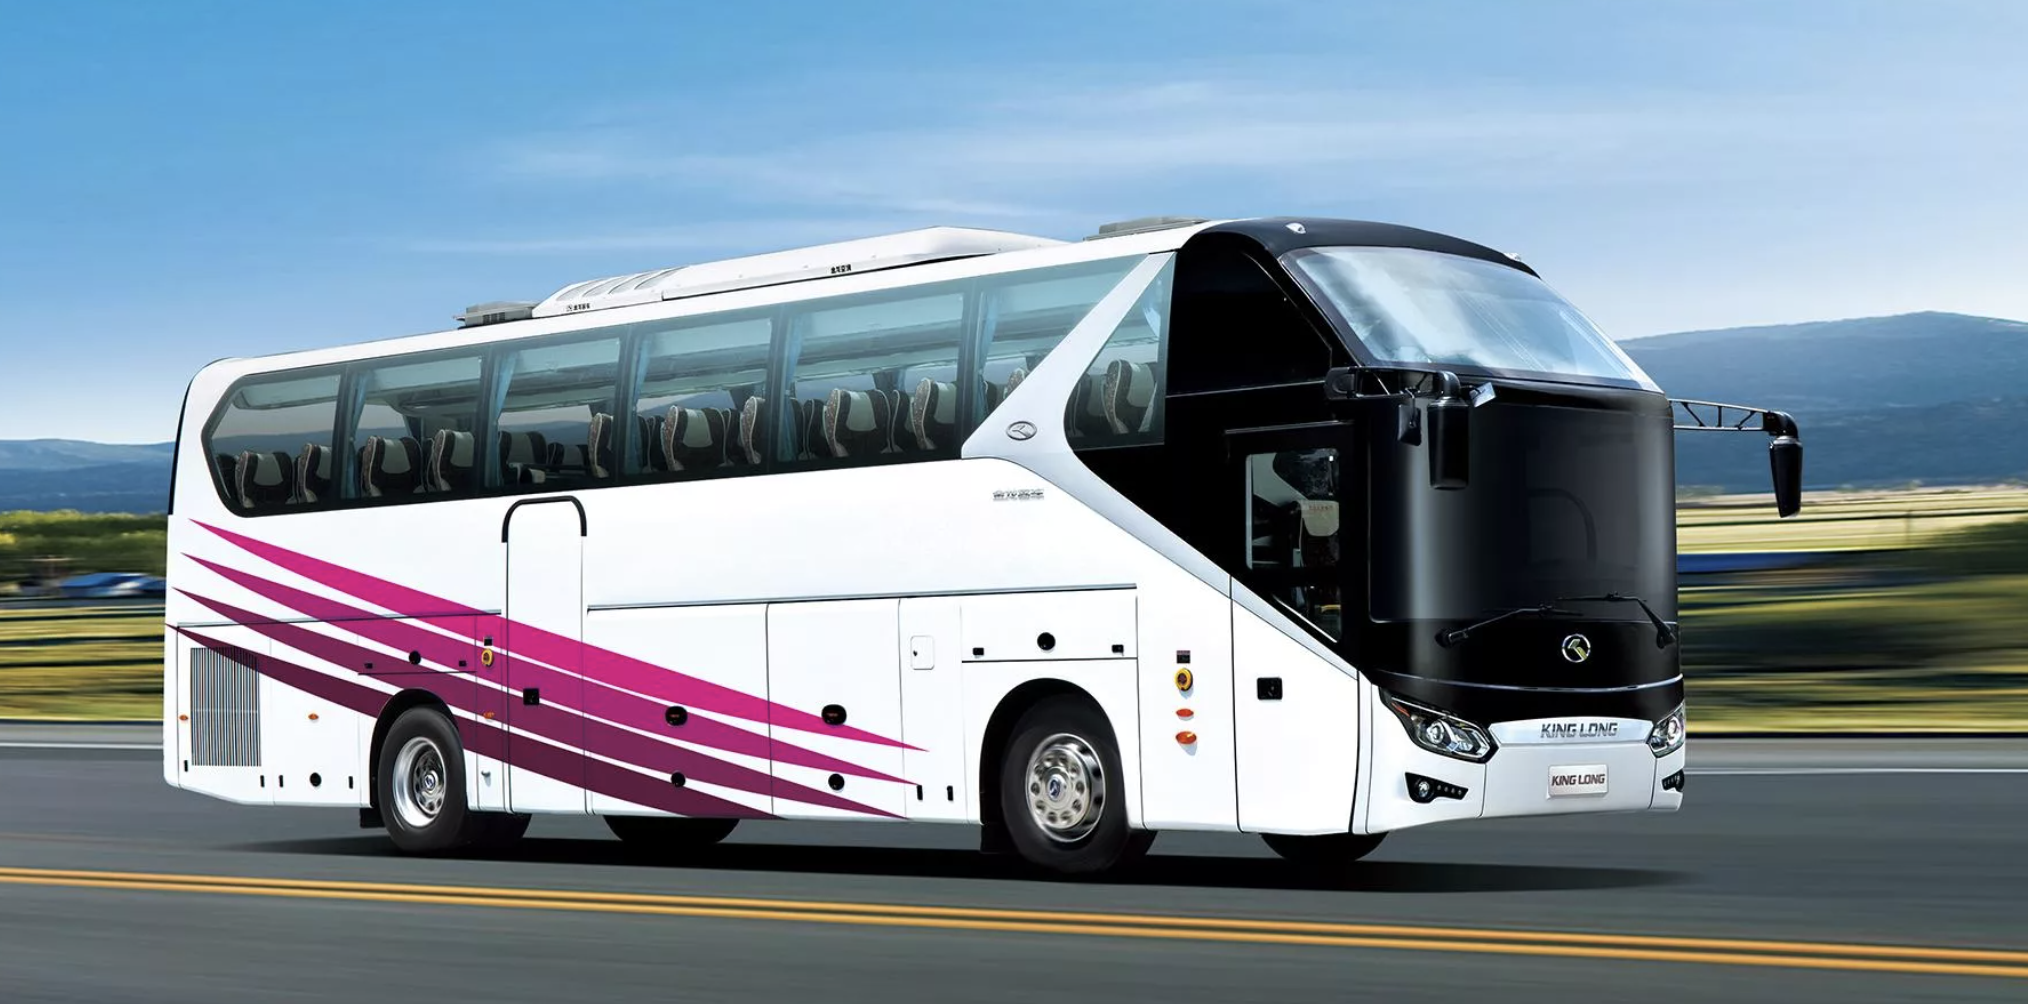 Транспортная межгород. Автобусы Кинг Лонг пассажирские. Туристический автобус Кинг Лонг. Кинг Лонг автобус 2021 года. Туристические автобусы Кинг Лонг 45 мест.